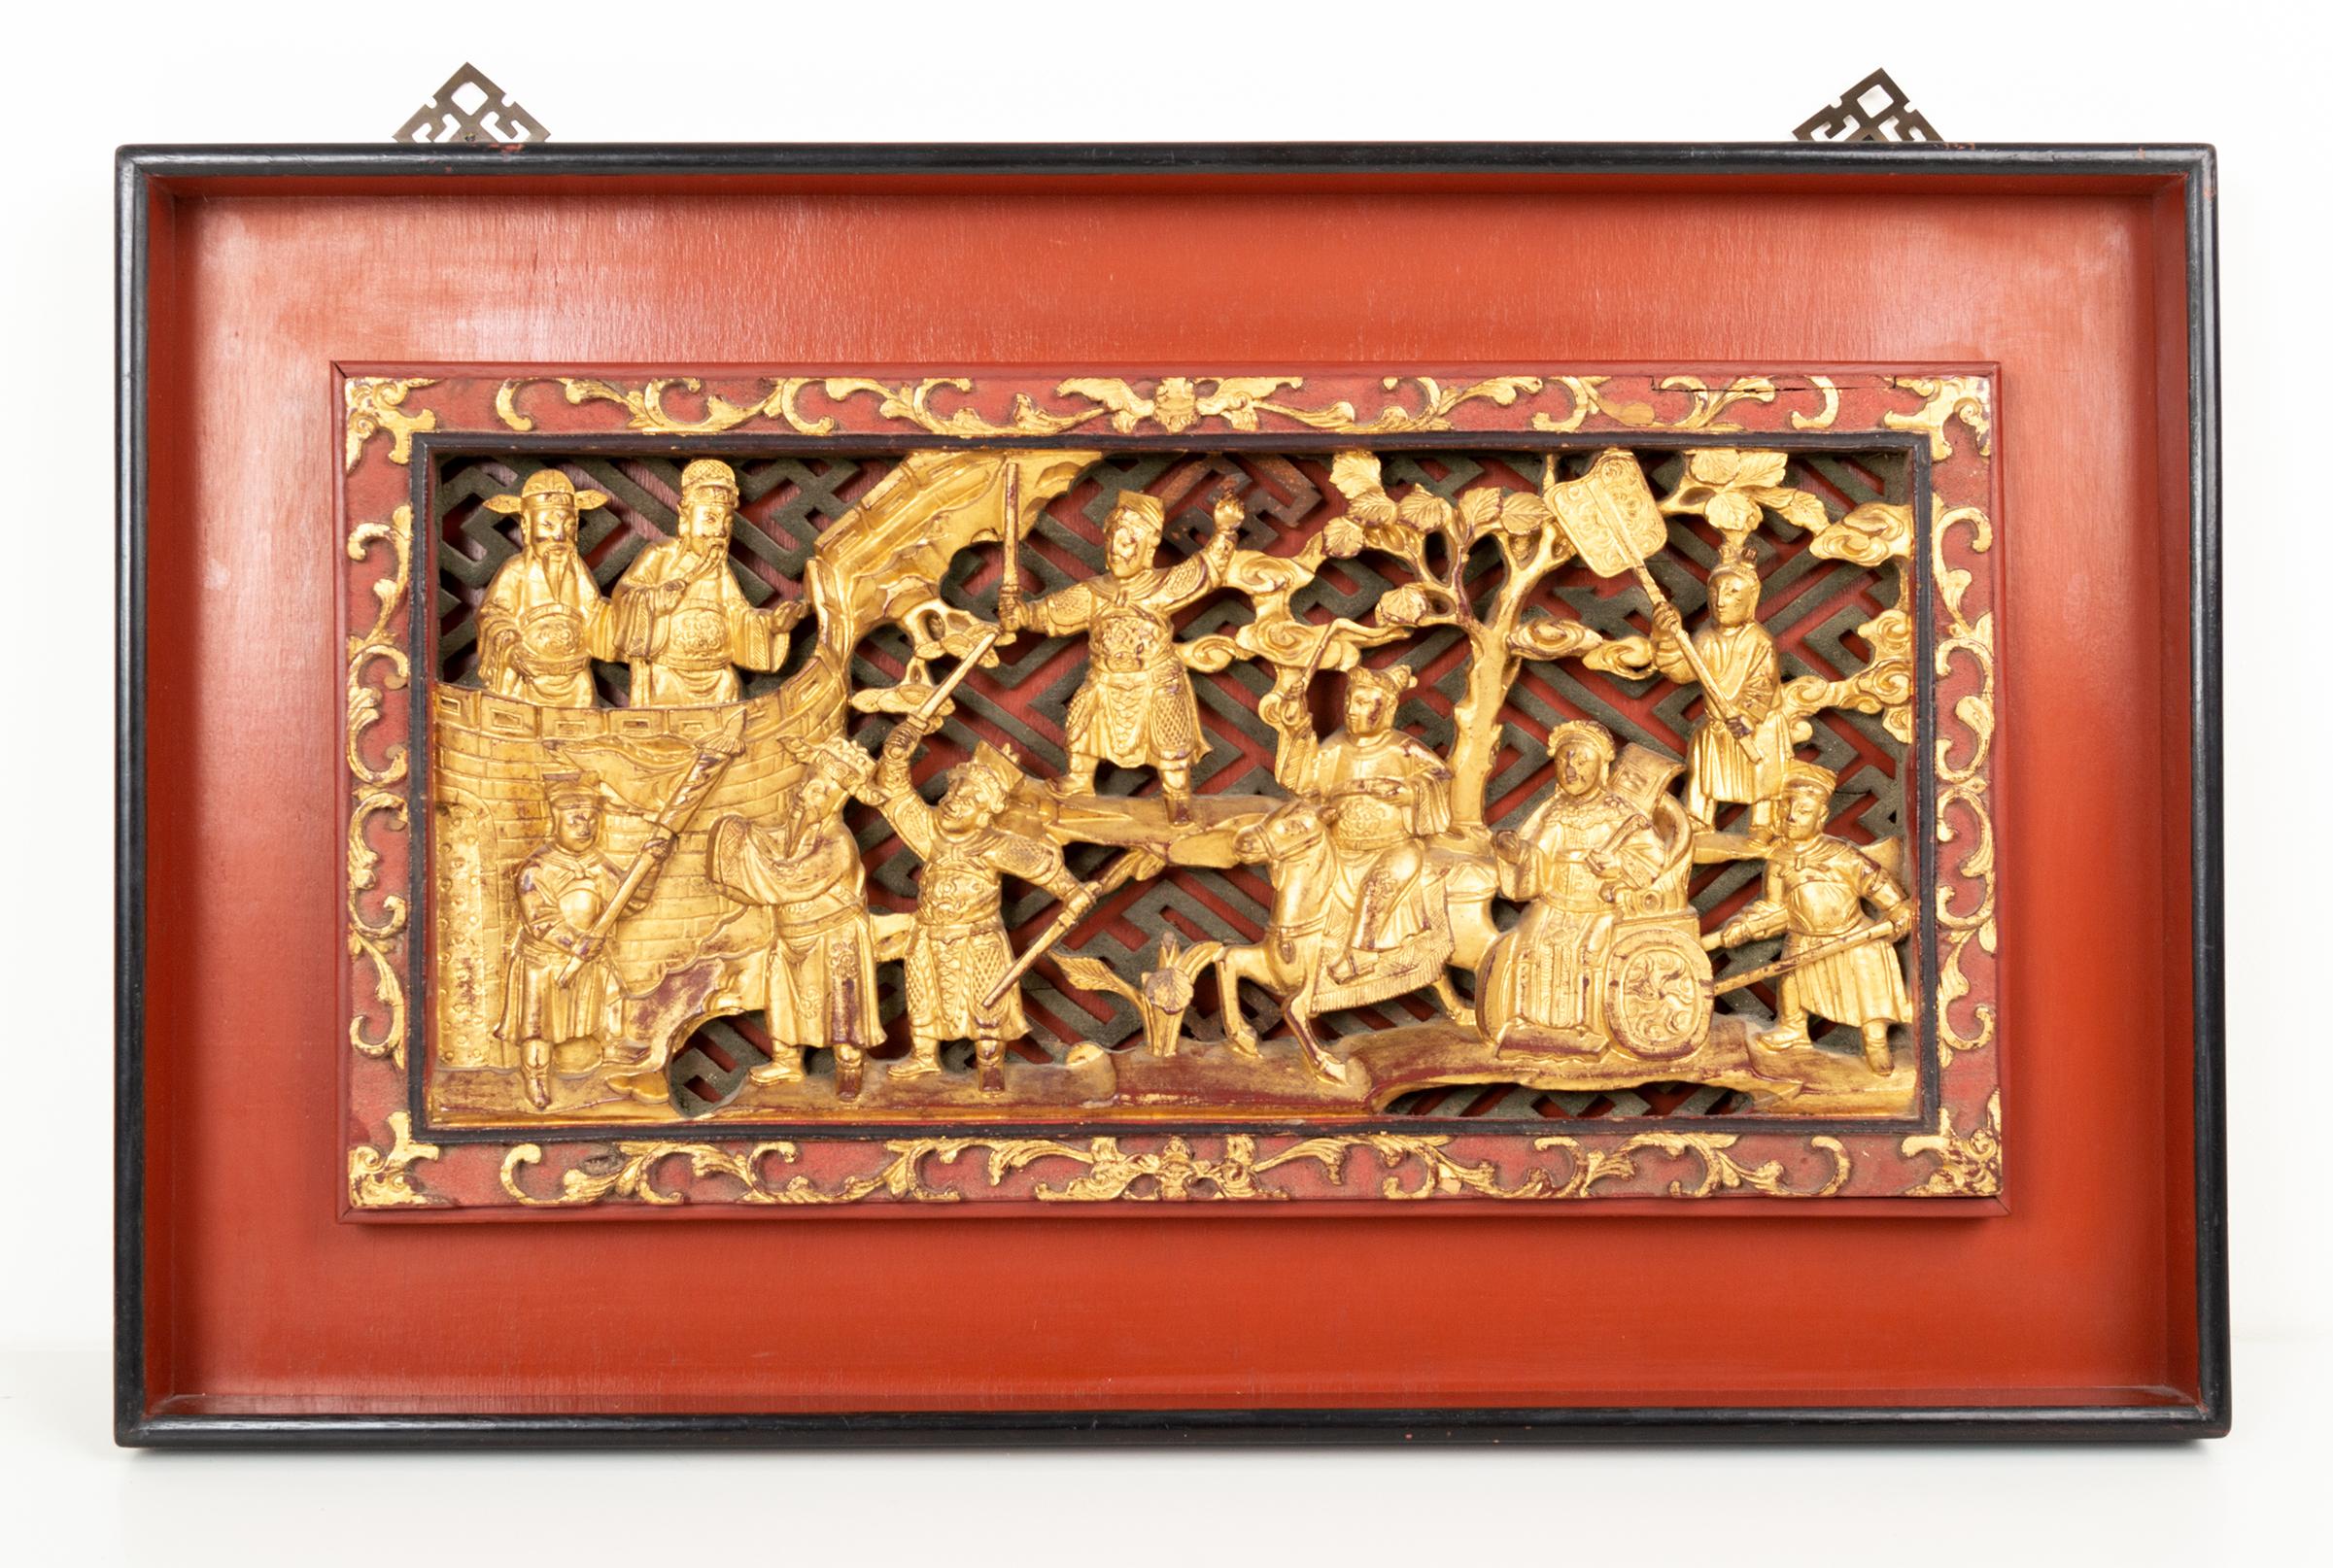 Ein prächtiges Paar kunstvoll geschnitzter, vergoldeter chinesischer Tafeln, die eine Kriegerszene darstellen. China, C.1920
In sehr gutem, altersgemäßem Zustand, mit etwas Staub in den Schnitzereien und der erwarteten Patina.